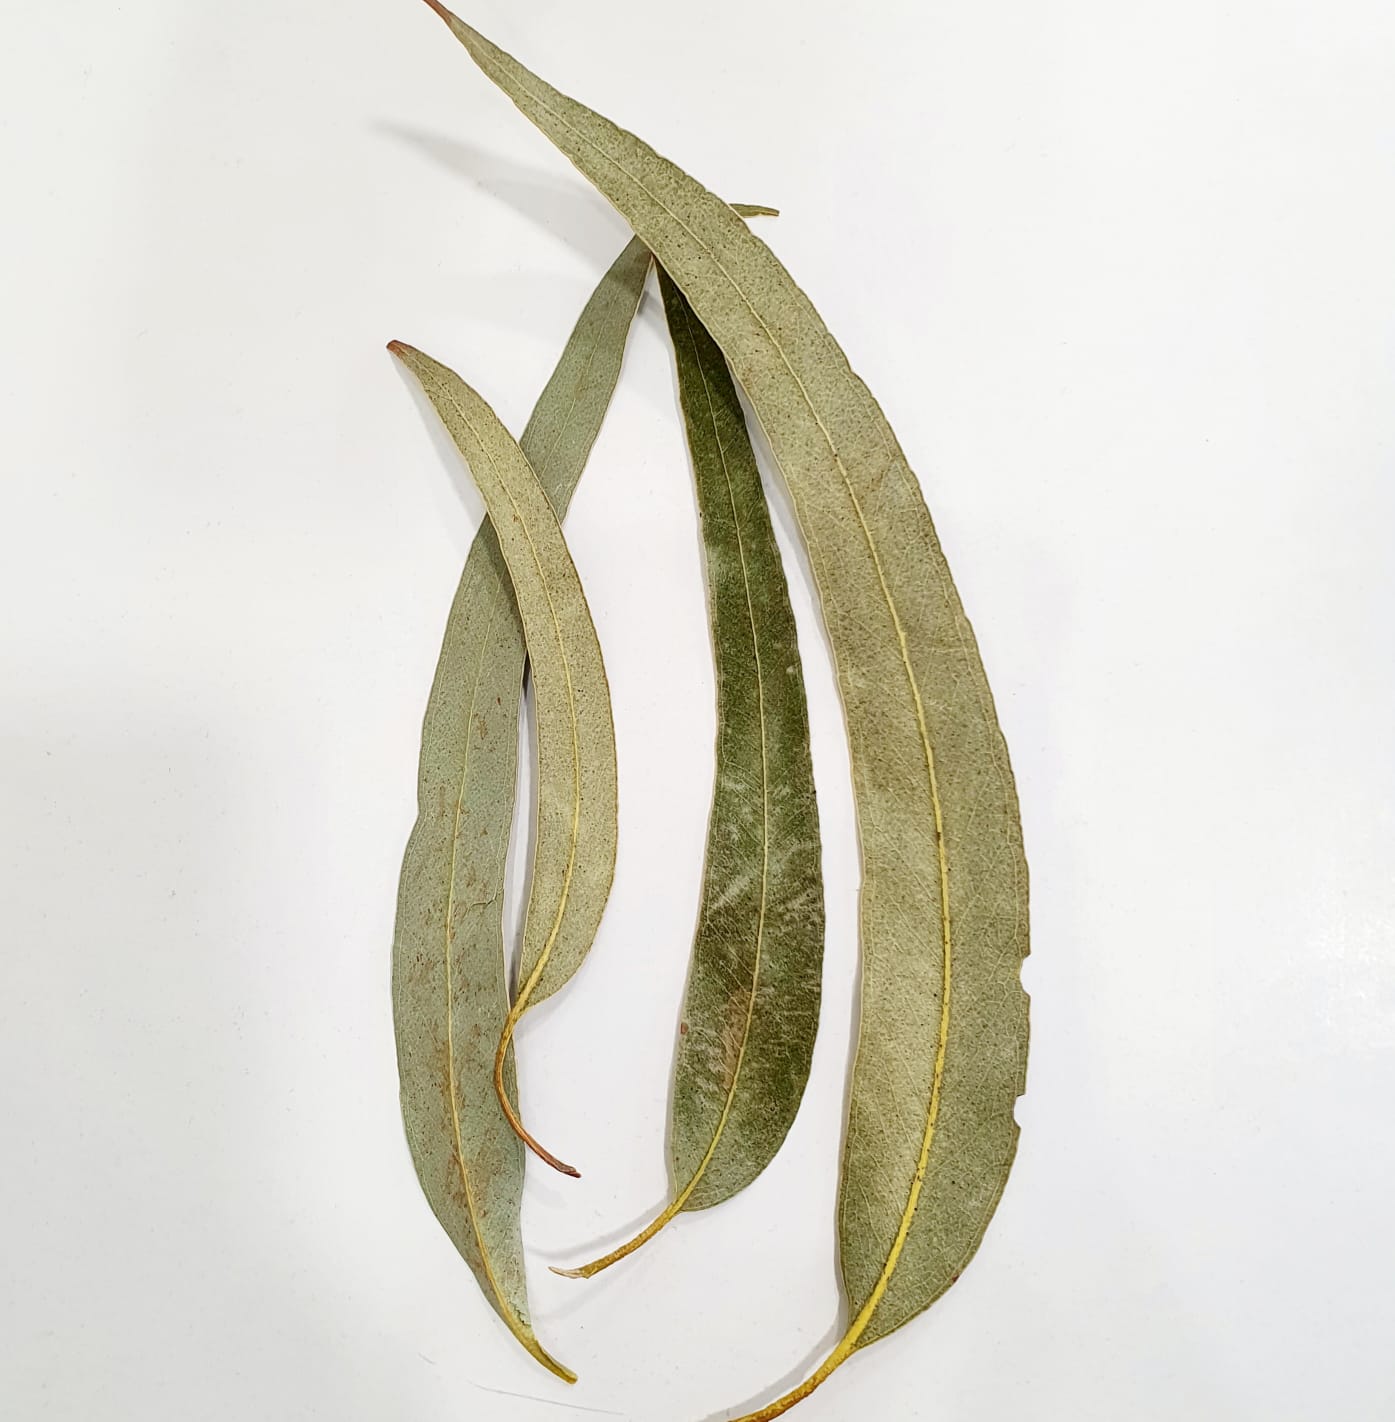 Eucalyptus à feuilles cendrées - Vente en ligne de plants de Eucalyptus à  feuilles cendrées pas cher